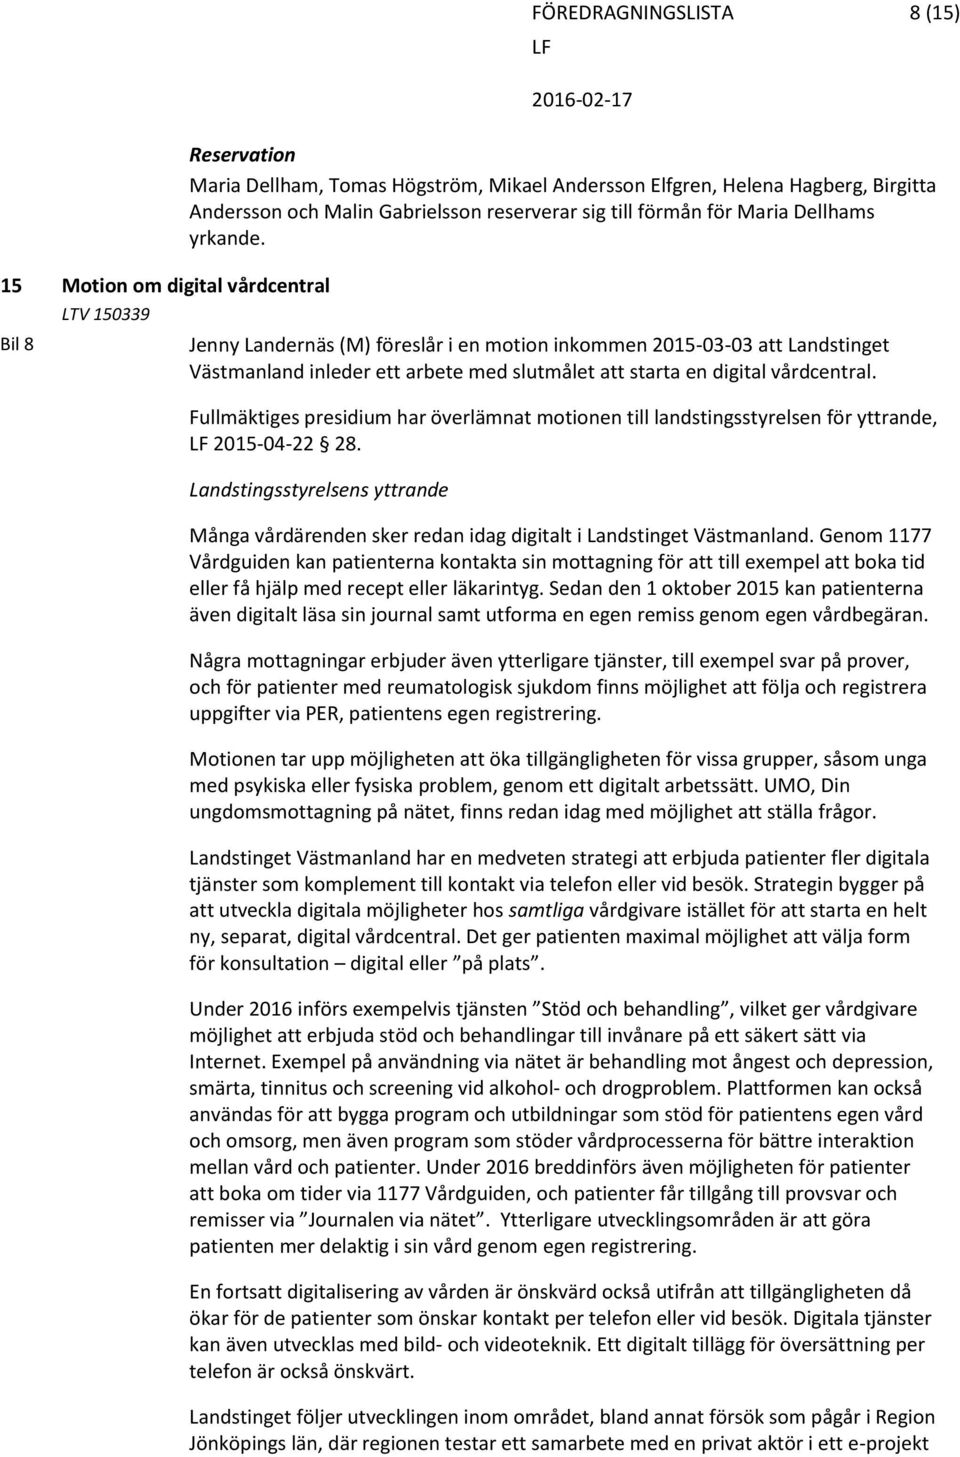 Jenny Landernäs (M) föreslår i en motion inkommen 2015-03-03 att Landstinget Västmanland inleder ett arbete med slutmålet att starta en digital vårdcentral.